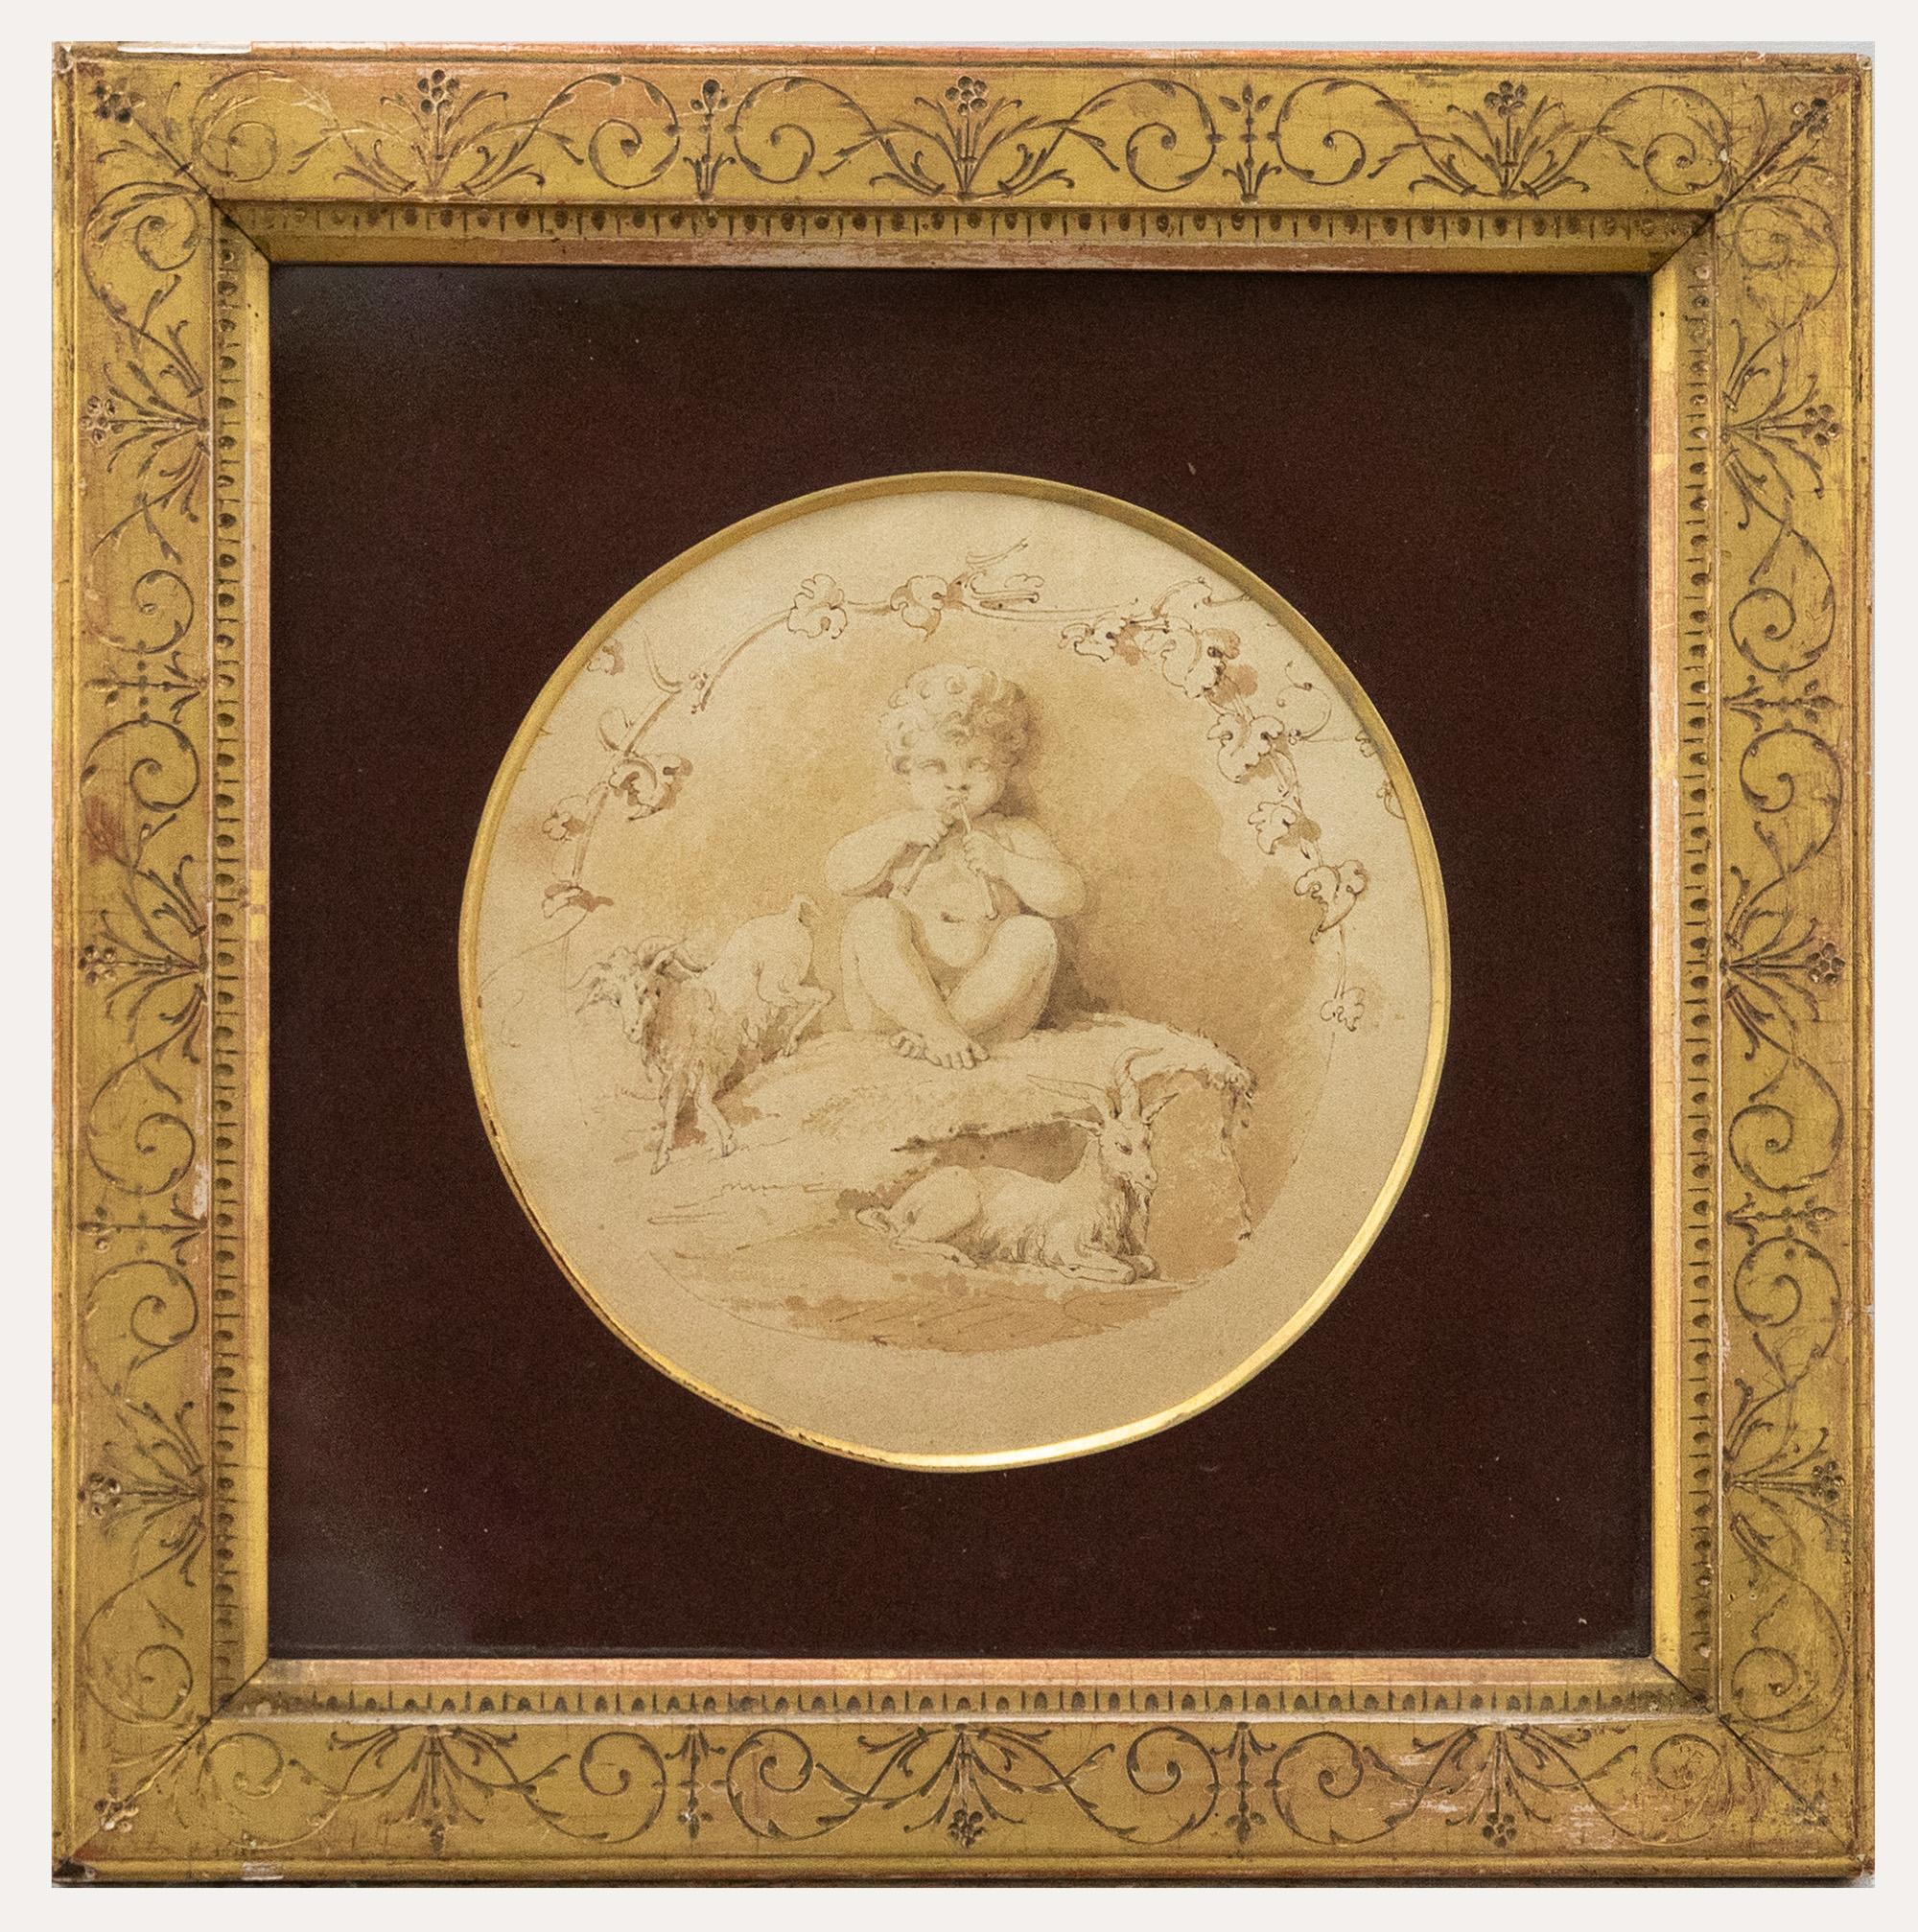 Ein zartes Sepia-Aquarell aus dem 18. Jahrhundert, das das Bacchus-Kind mit Ziegen darstellt. Schön präsentiert in einem zeitgenössischen vergoldeten Rahmen mit Sgraffito-Dekoration. Viele der Graphitarbeiten des Künstlers sind in der Szene noch zu